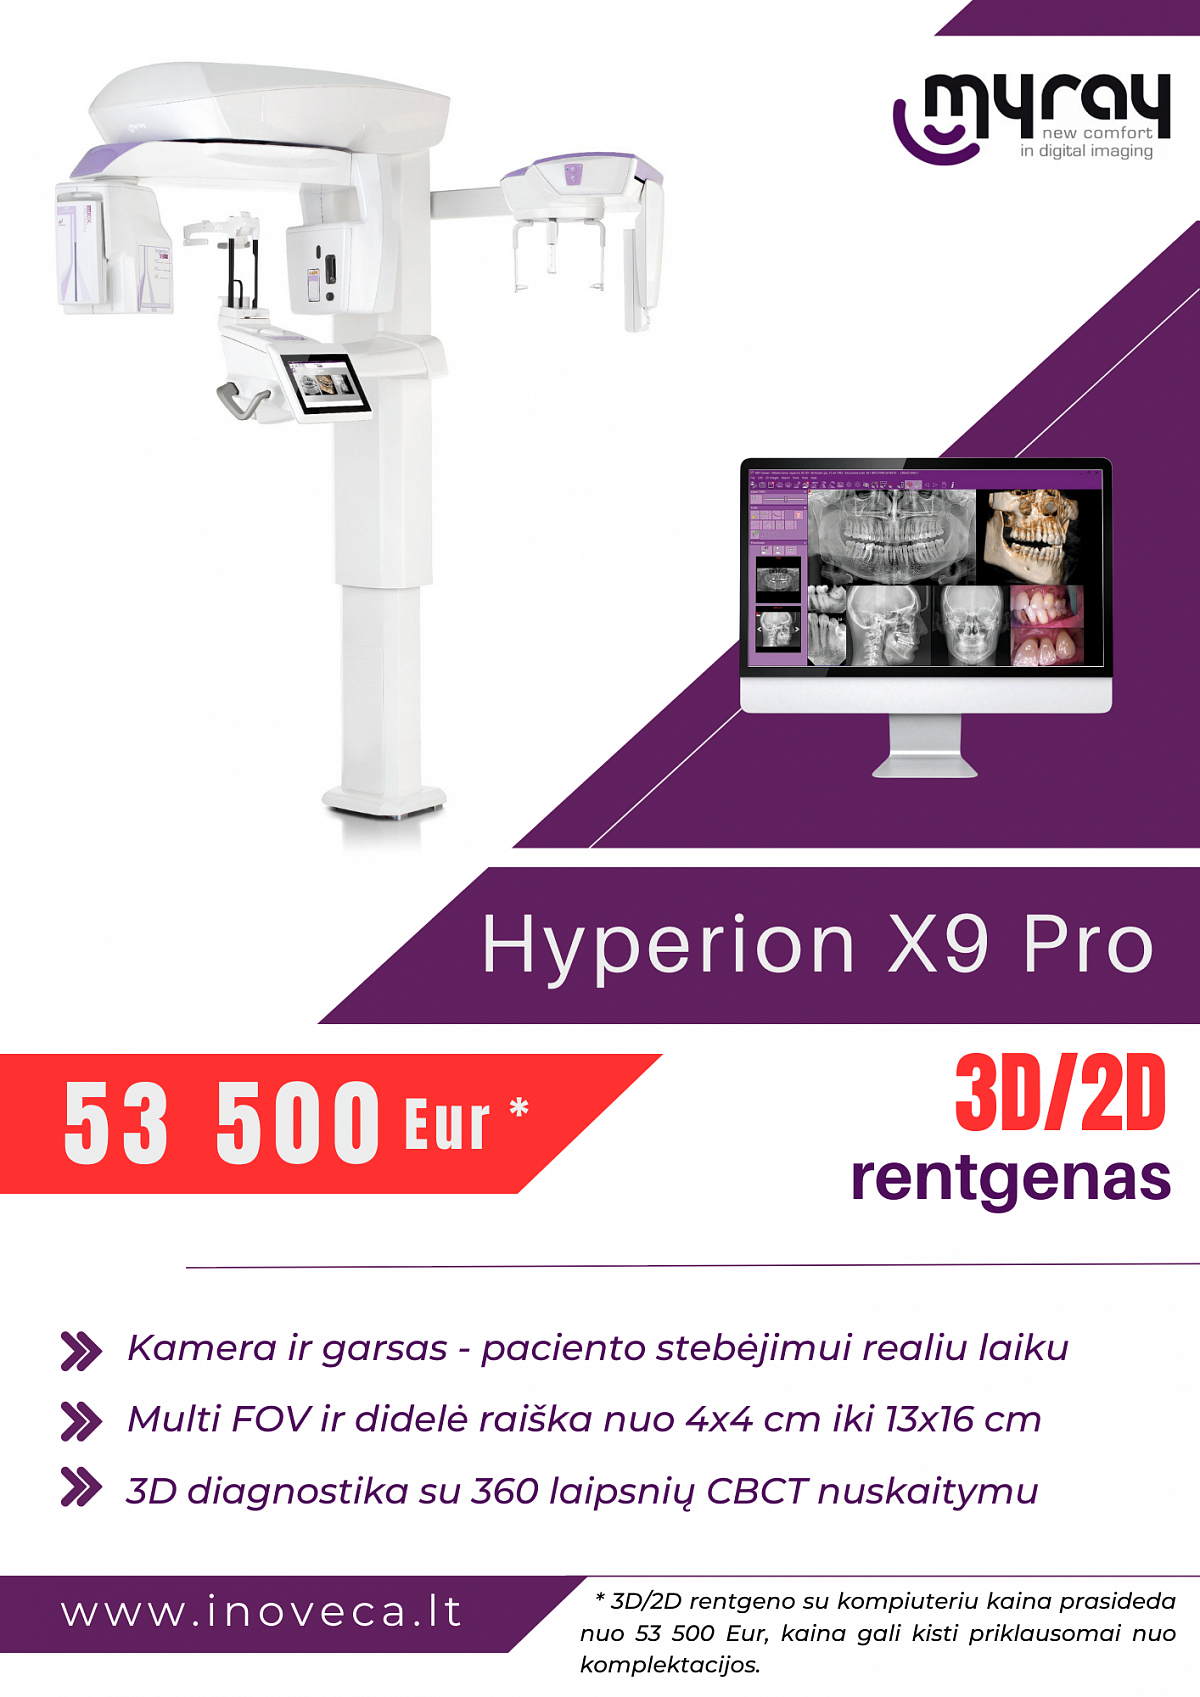 Hyperion X9 Pro DC‘‘‘ rentgenas – universaliausia ekstraoralinė „trys viename“ vaizdo gavimo sistema rinkoje dabar už 53500 Eur!